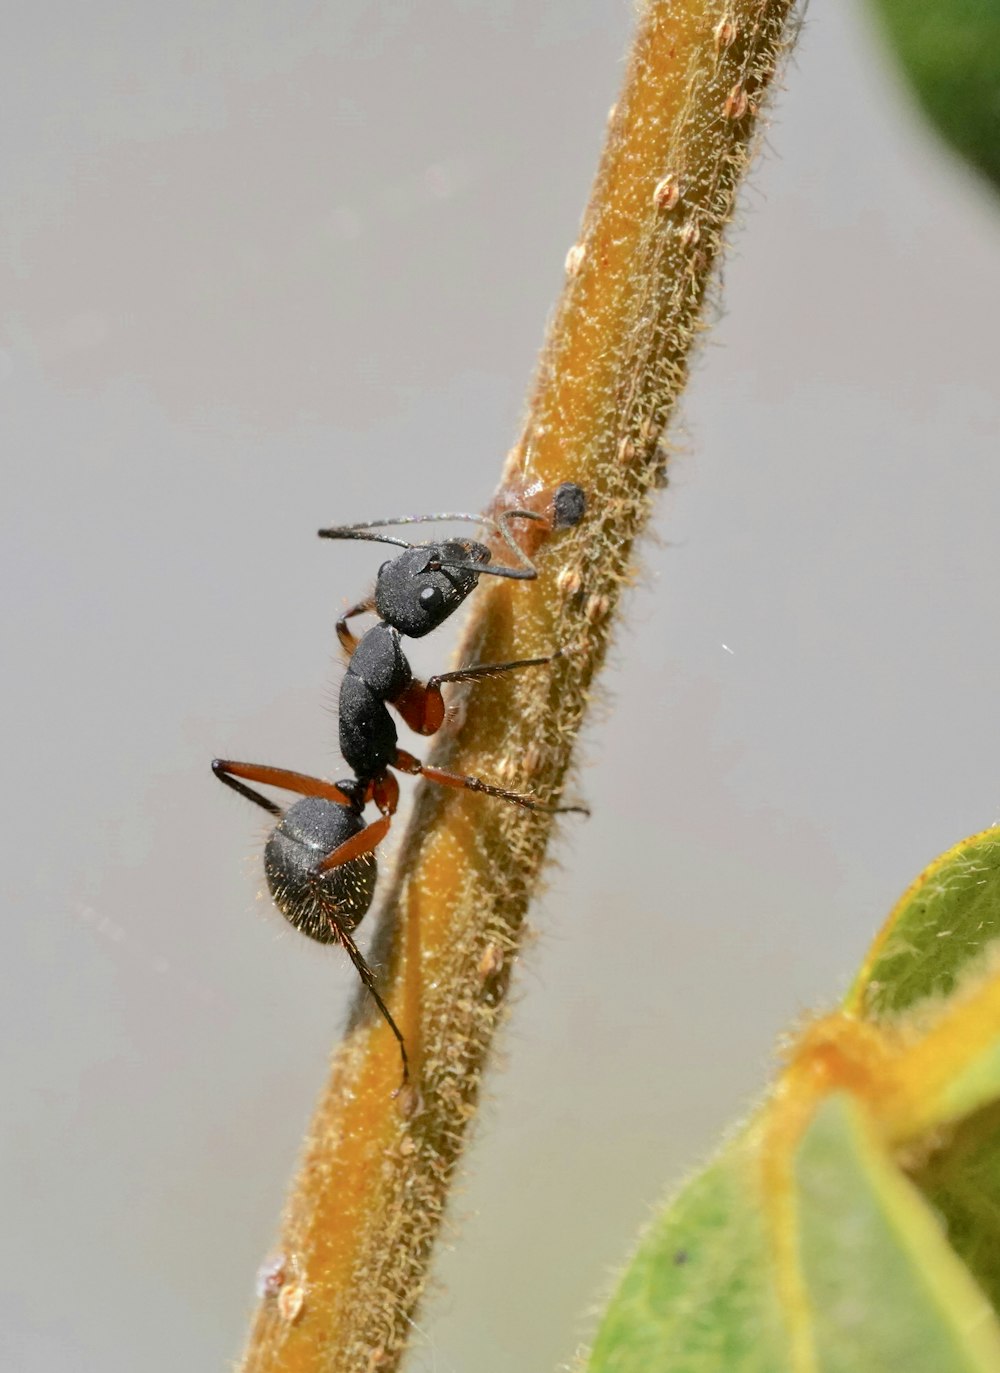 schwarze Ameise auf weißer Oberfläche